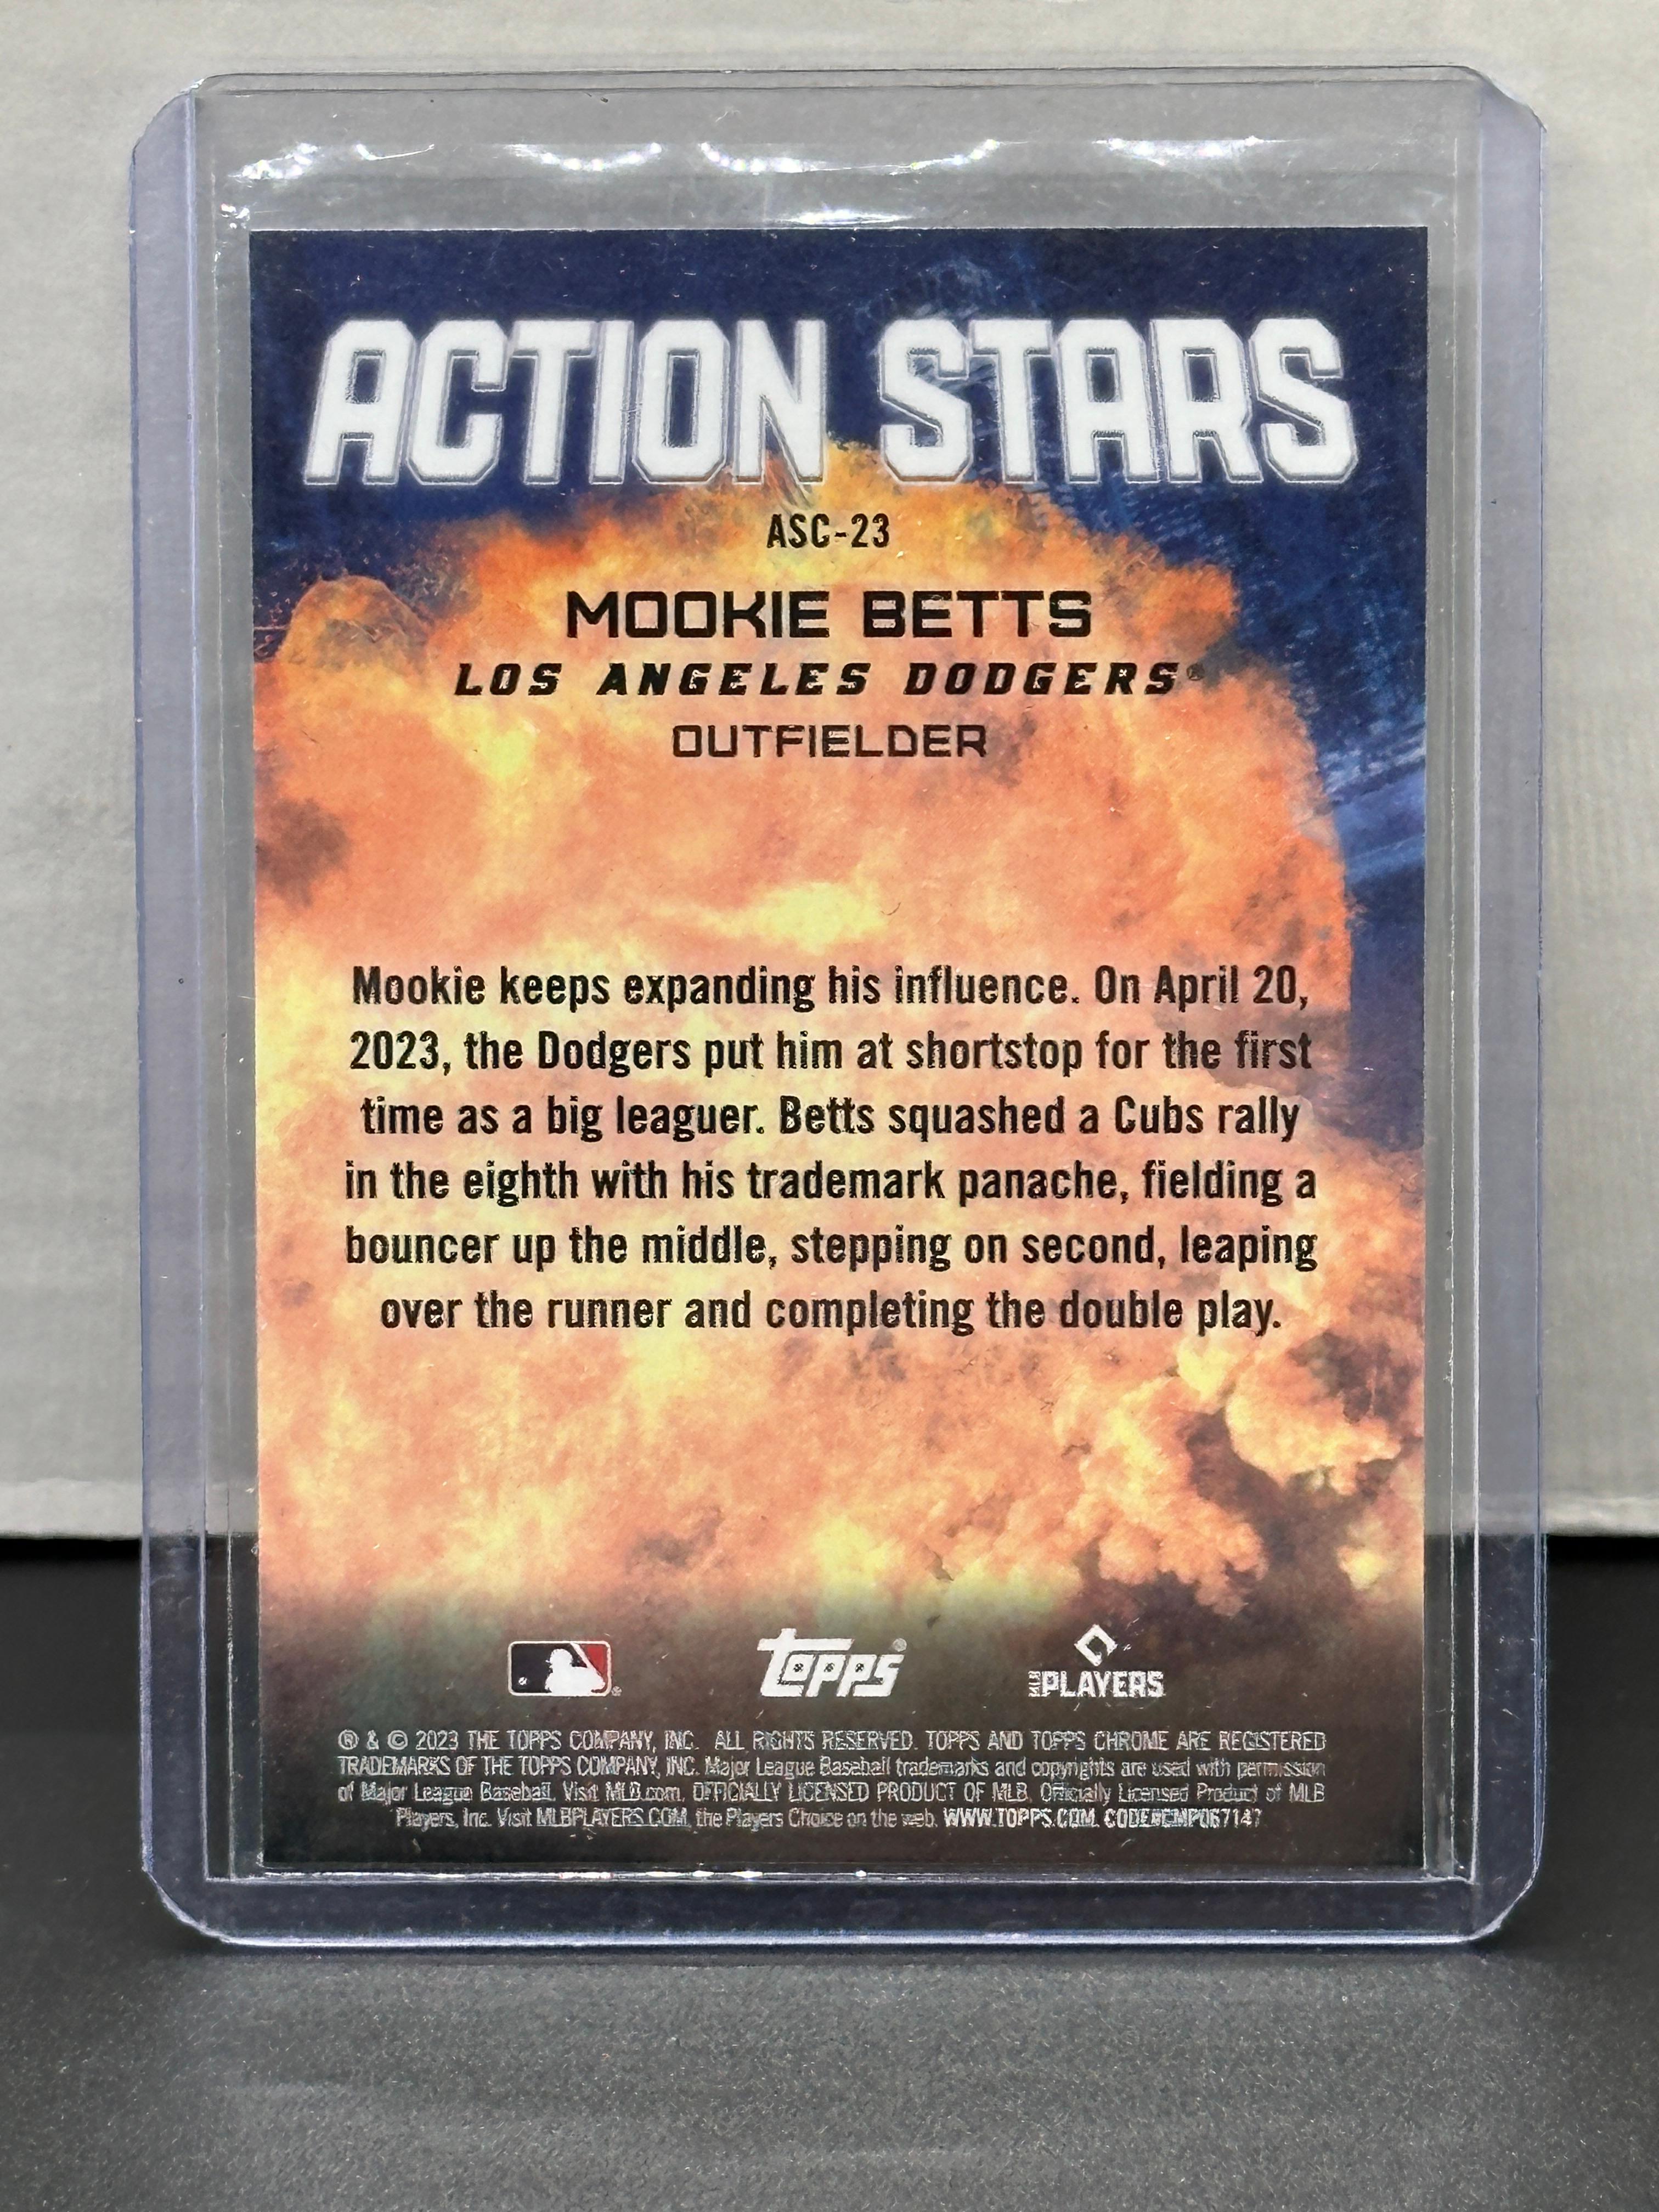 Mookie Betts 2023 Topps Chrome Action Stars Refractor Insert #ASC-23